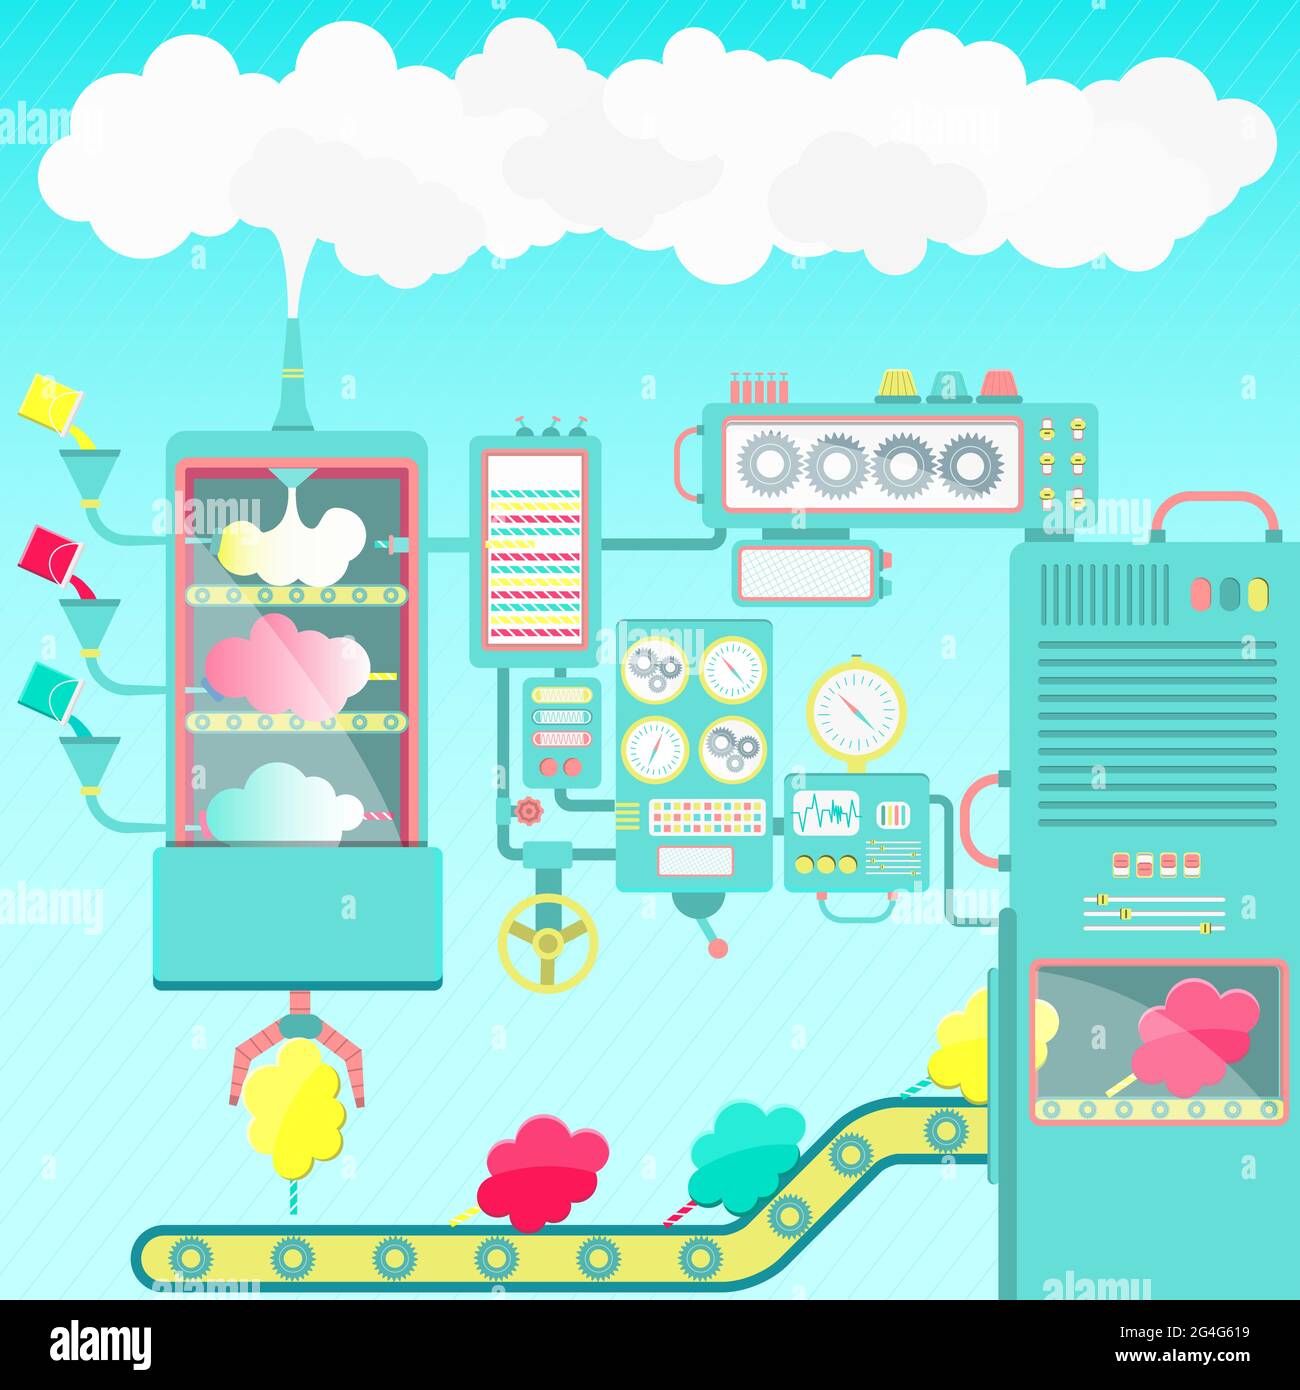 Fabbrica creativa e fantasiosa di caramelle di cotone fatta di nuvole. Macchine carine. Illustrazione Vettoriale